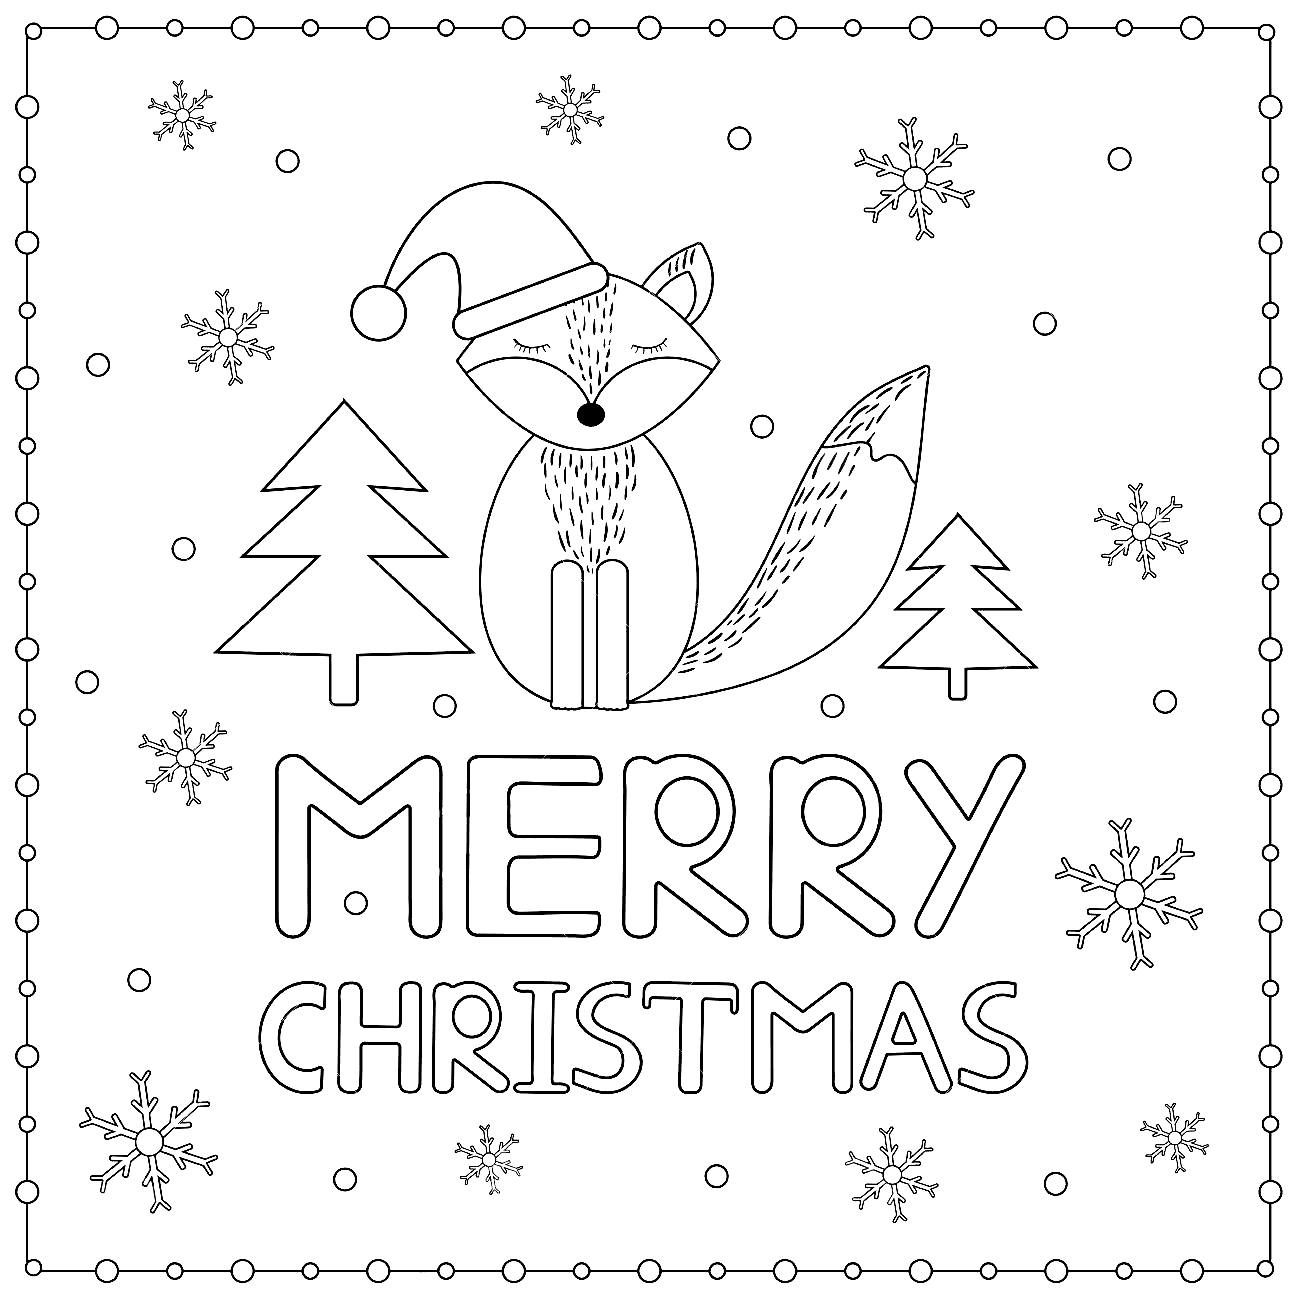 Cartolina di buon Natale con fiocchi di neve e volpe from Cartoline di Natale